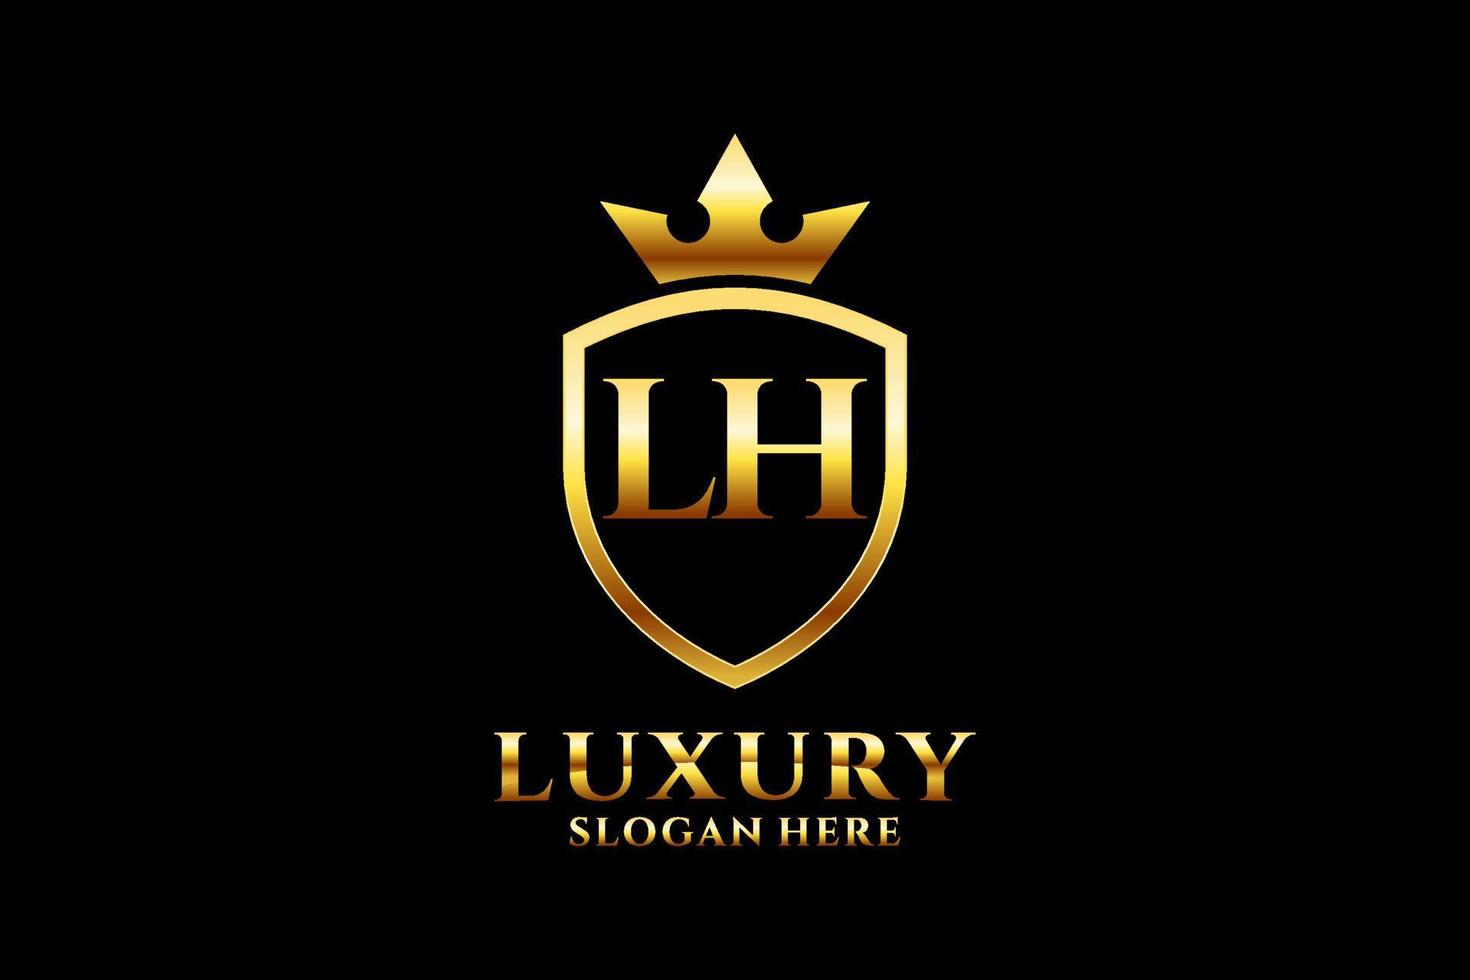 logotipo de monograma de lujo inicial lh elegante o plantilla de placa con pergaminos y corona real - perfecto para proyectos de marca de lujo vector